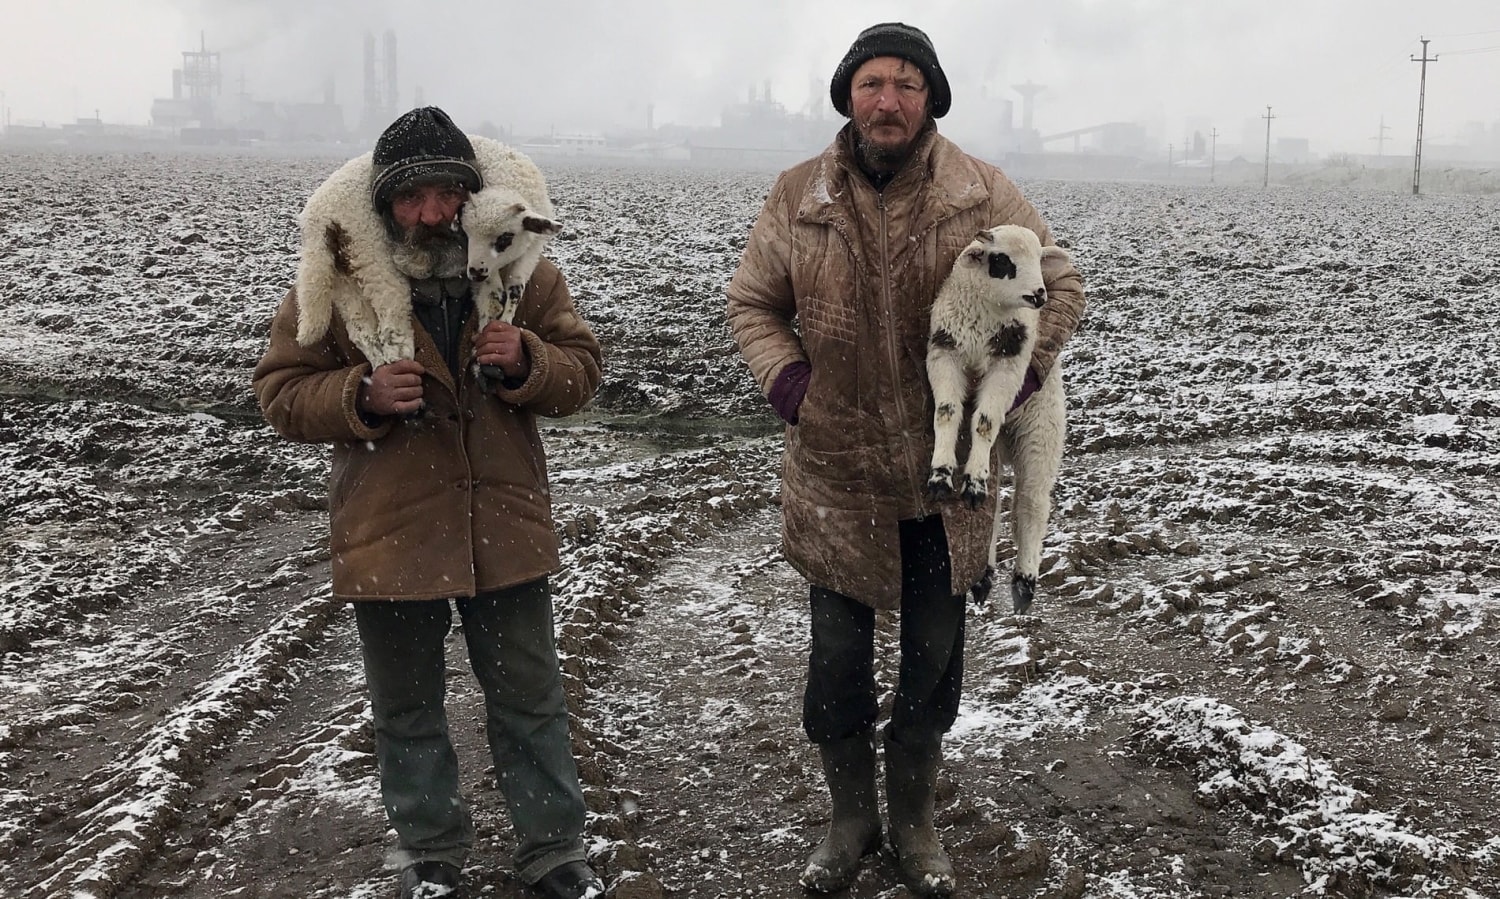 Transylvanian Shepherds, Târgu Mureș, Transylvania, Romania [OS] Photo by Istvan Kerekes